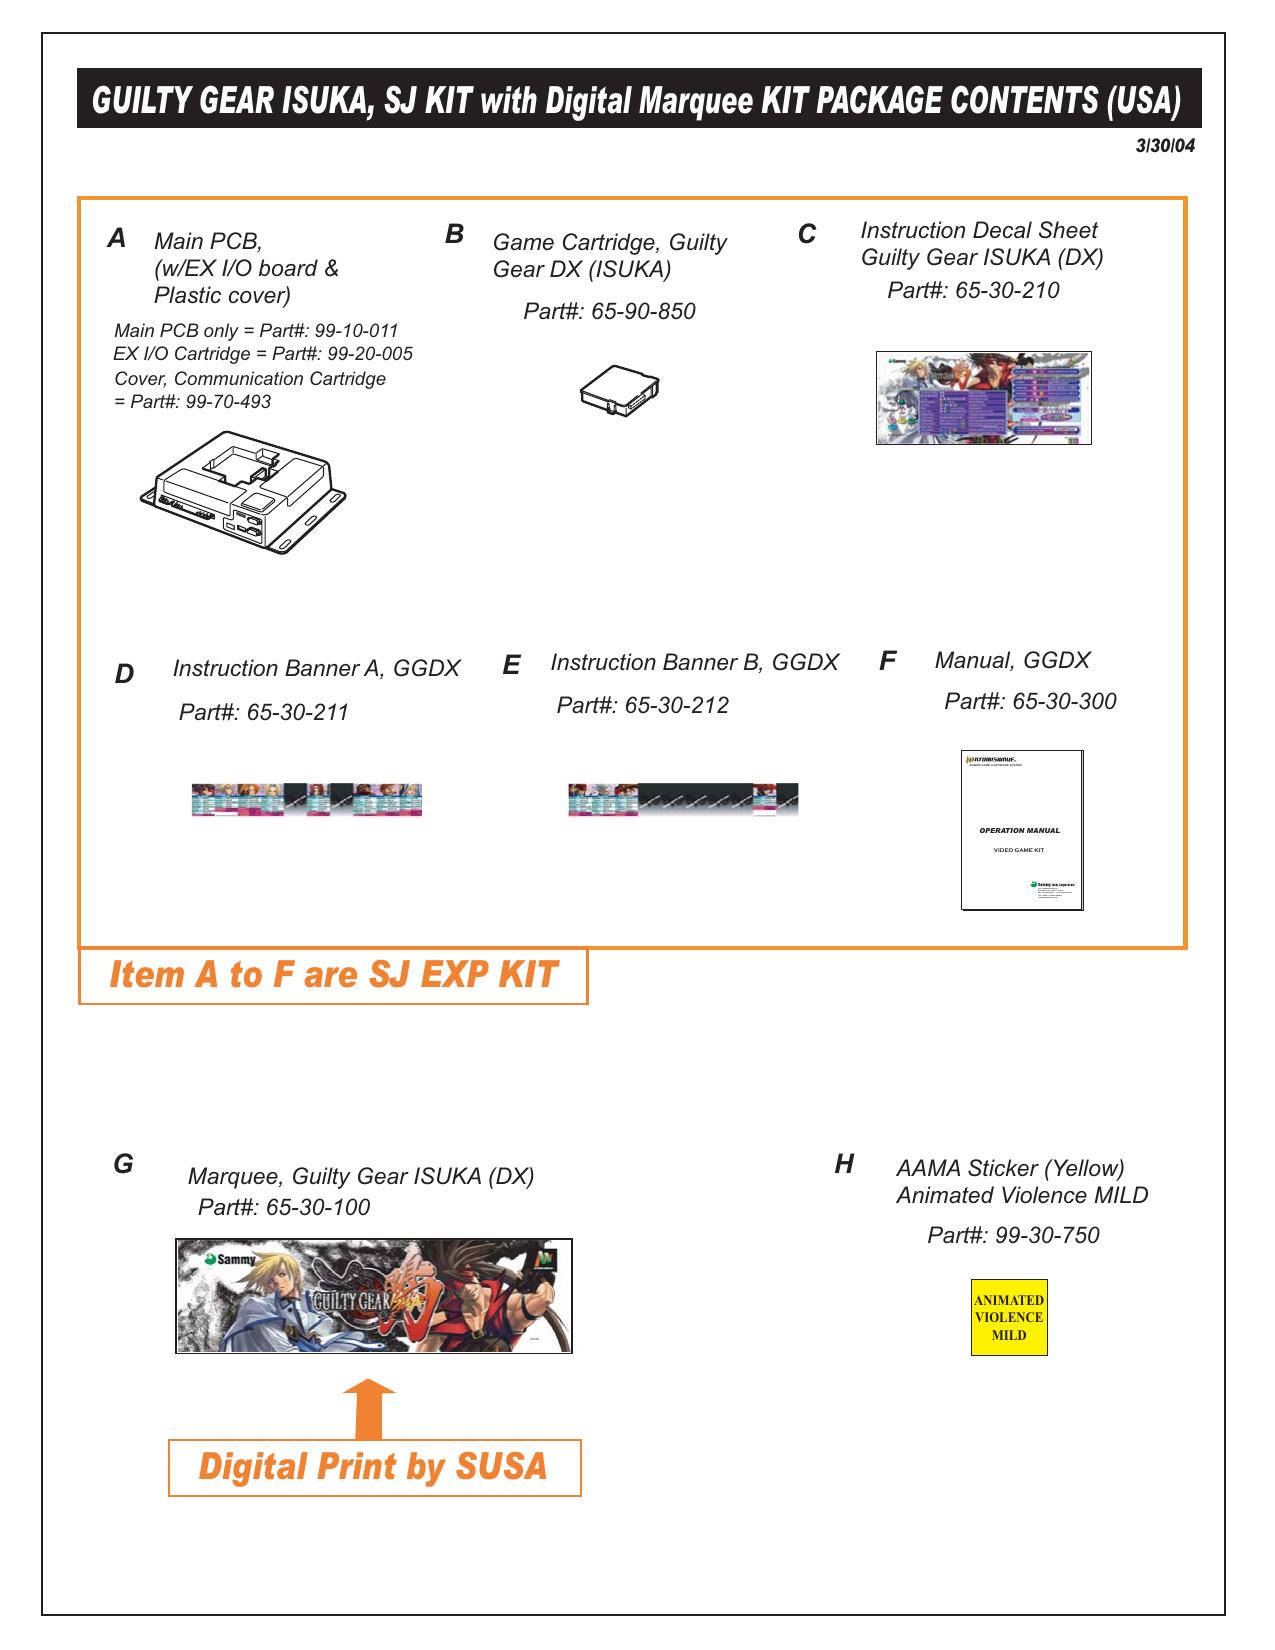 100404 KOF Neowave SJ EXP KIT List (USA).eps